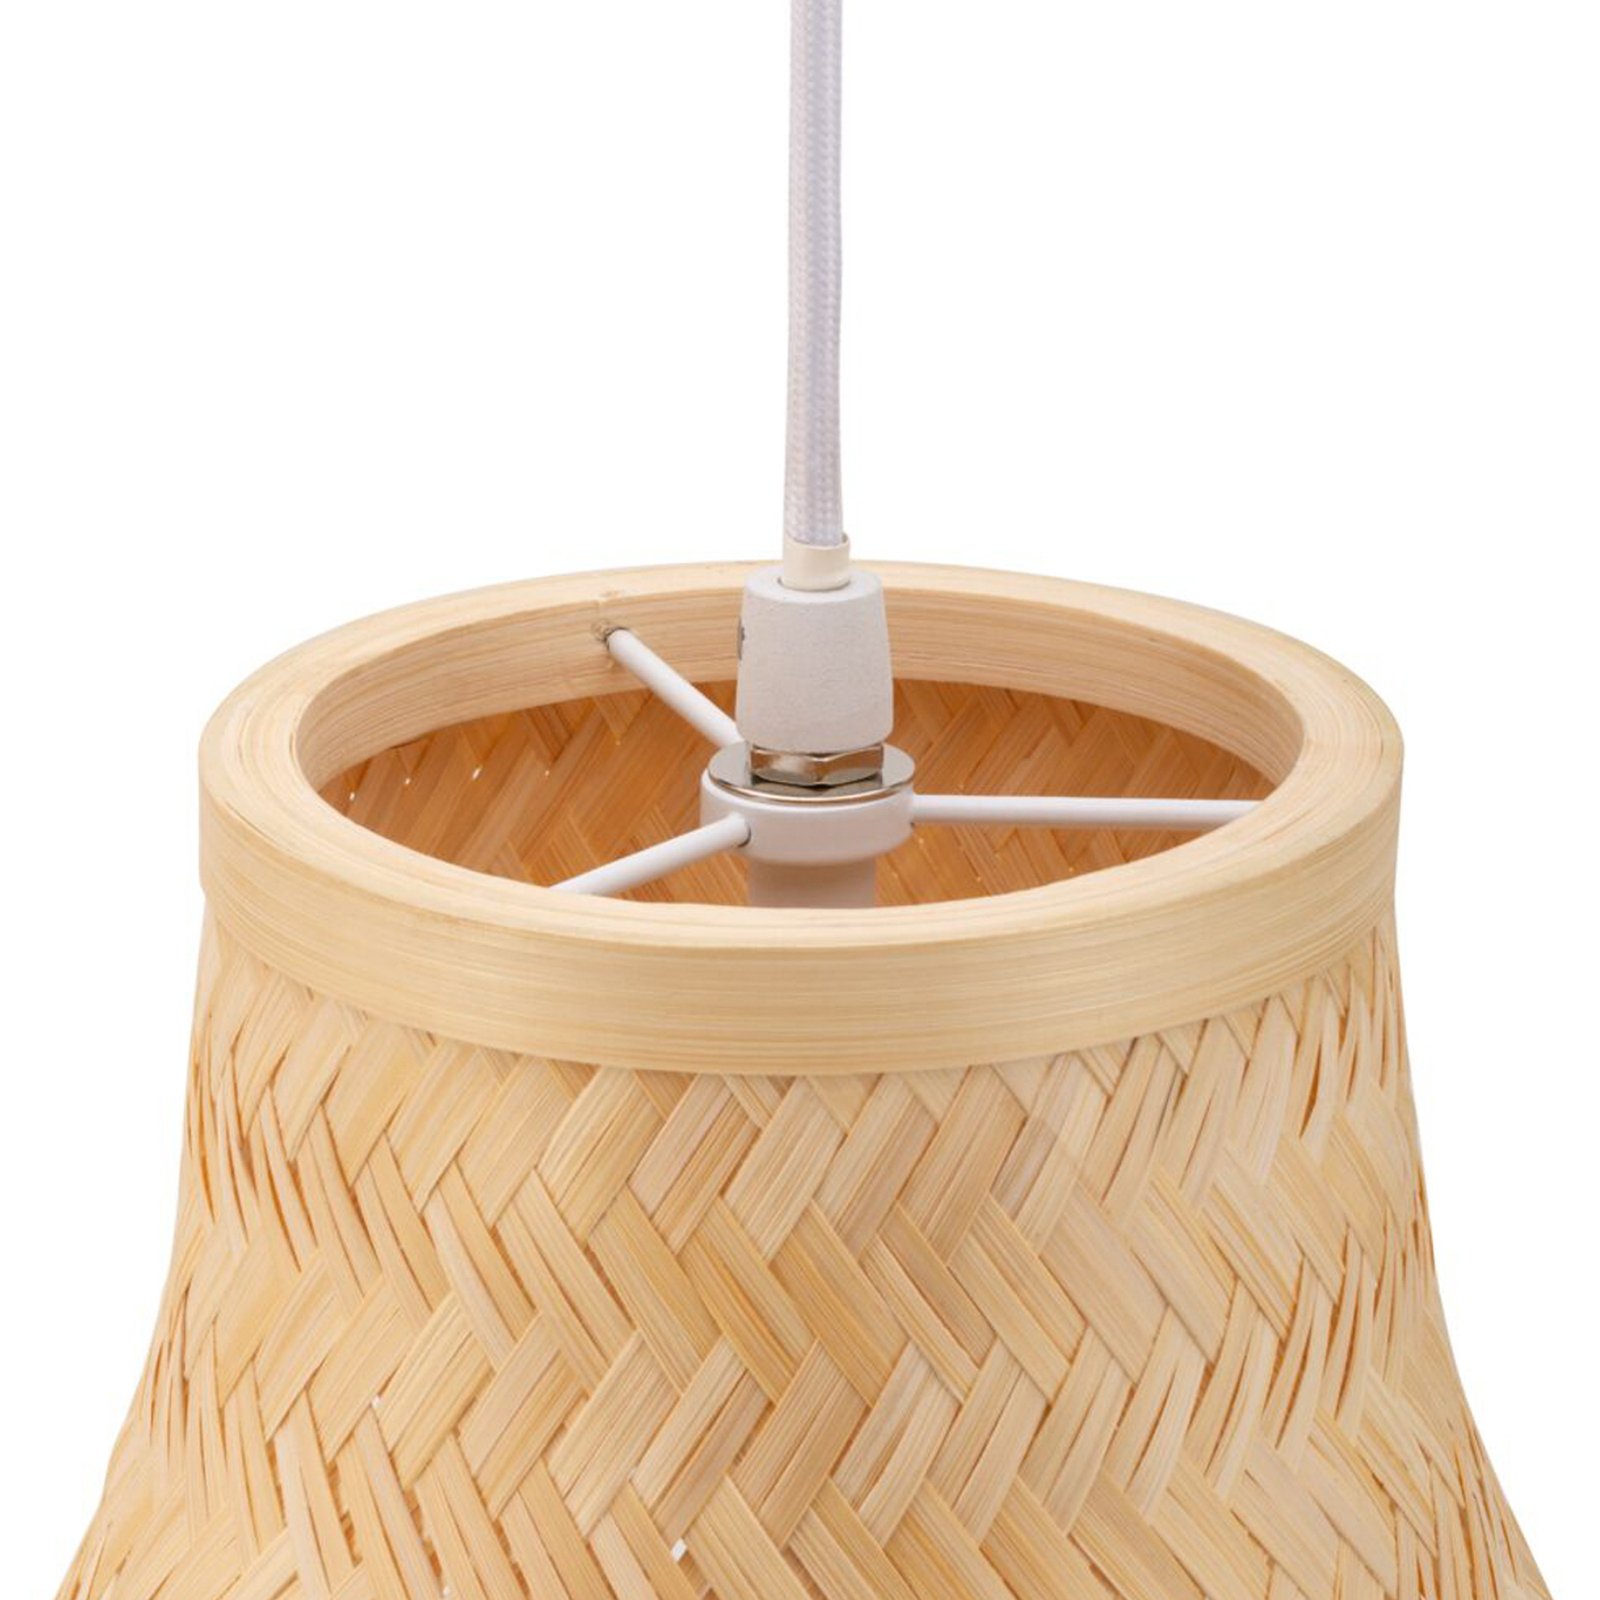 Pauleen Woody Romance hanglamp van bamboe